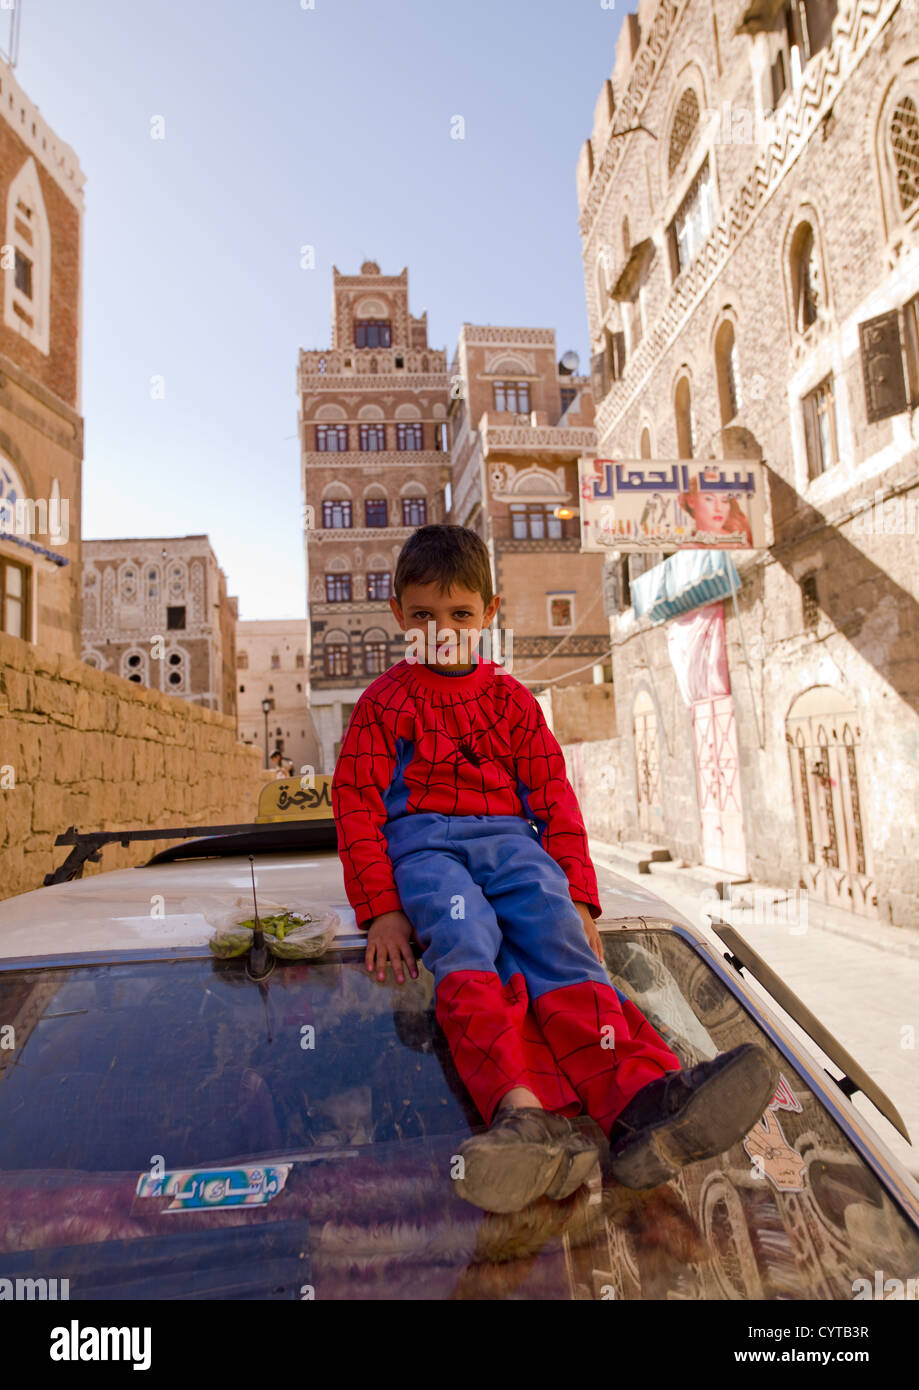 Lächelndes Kind trägt einen Spiderman-Anzug und Erwachsenen Schuhe, sitzt auf der Spitze eines Autos, Sanaa, Jemen Stockfoto